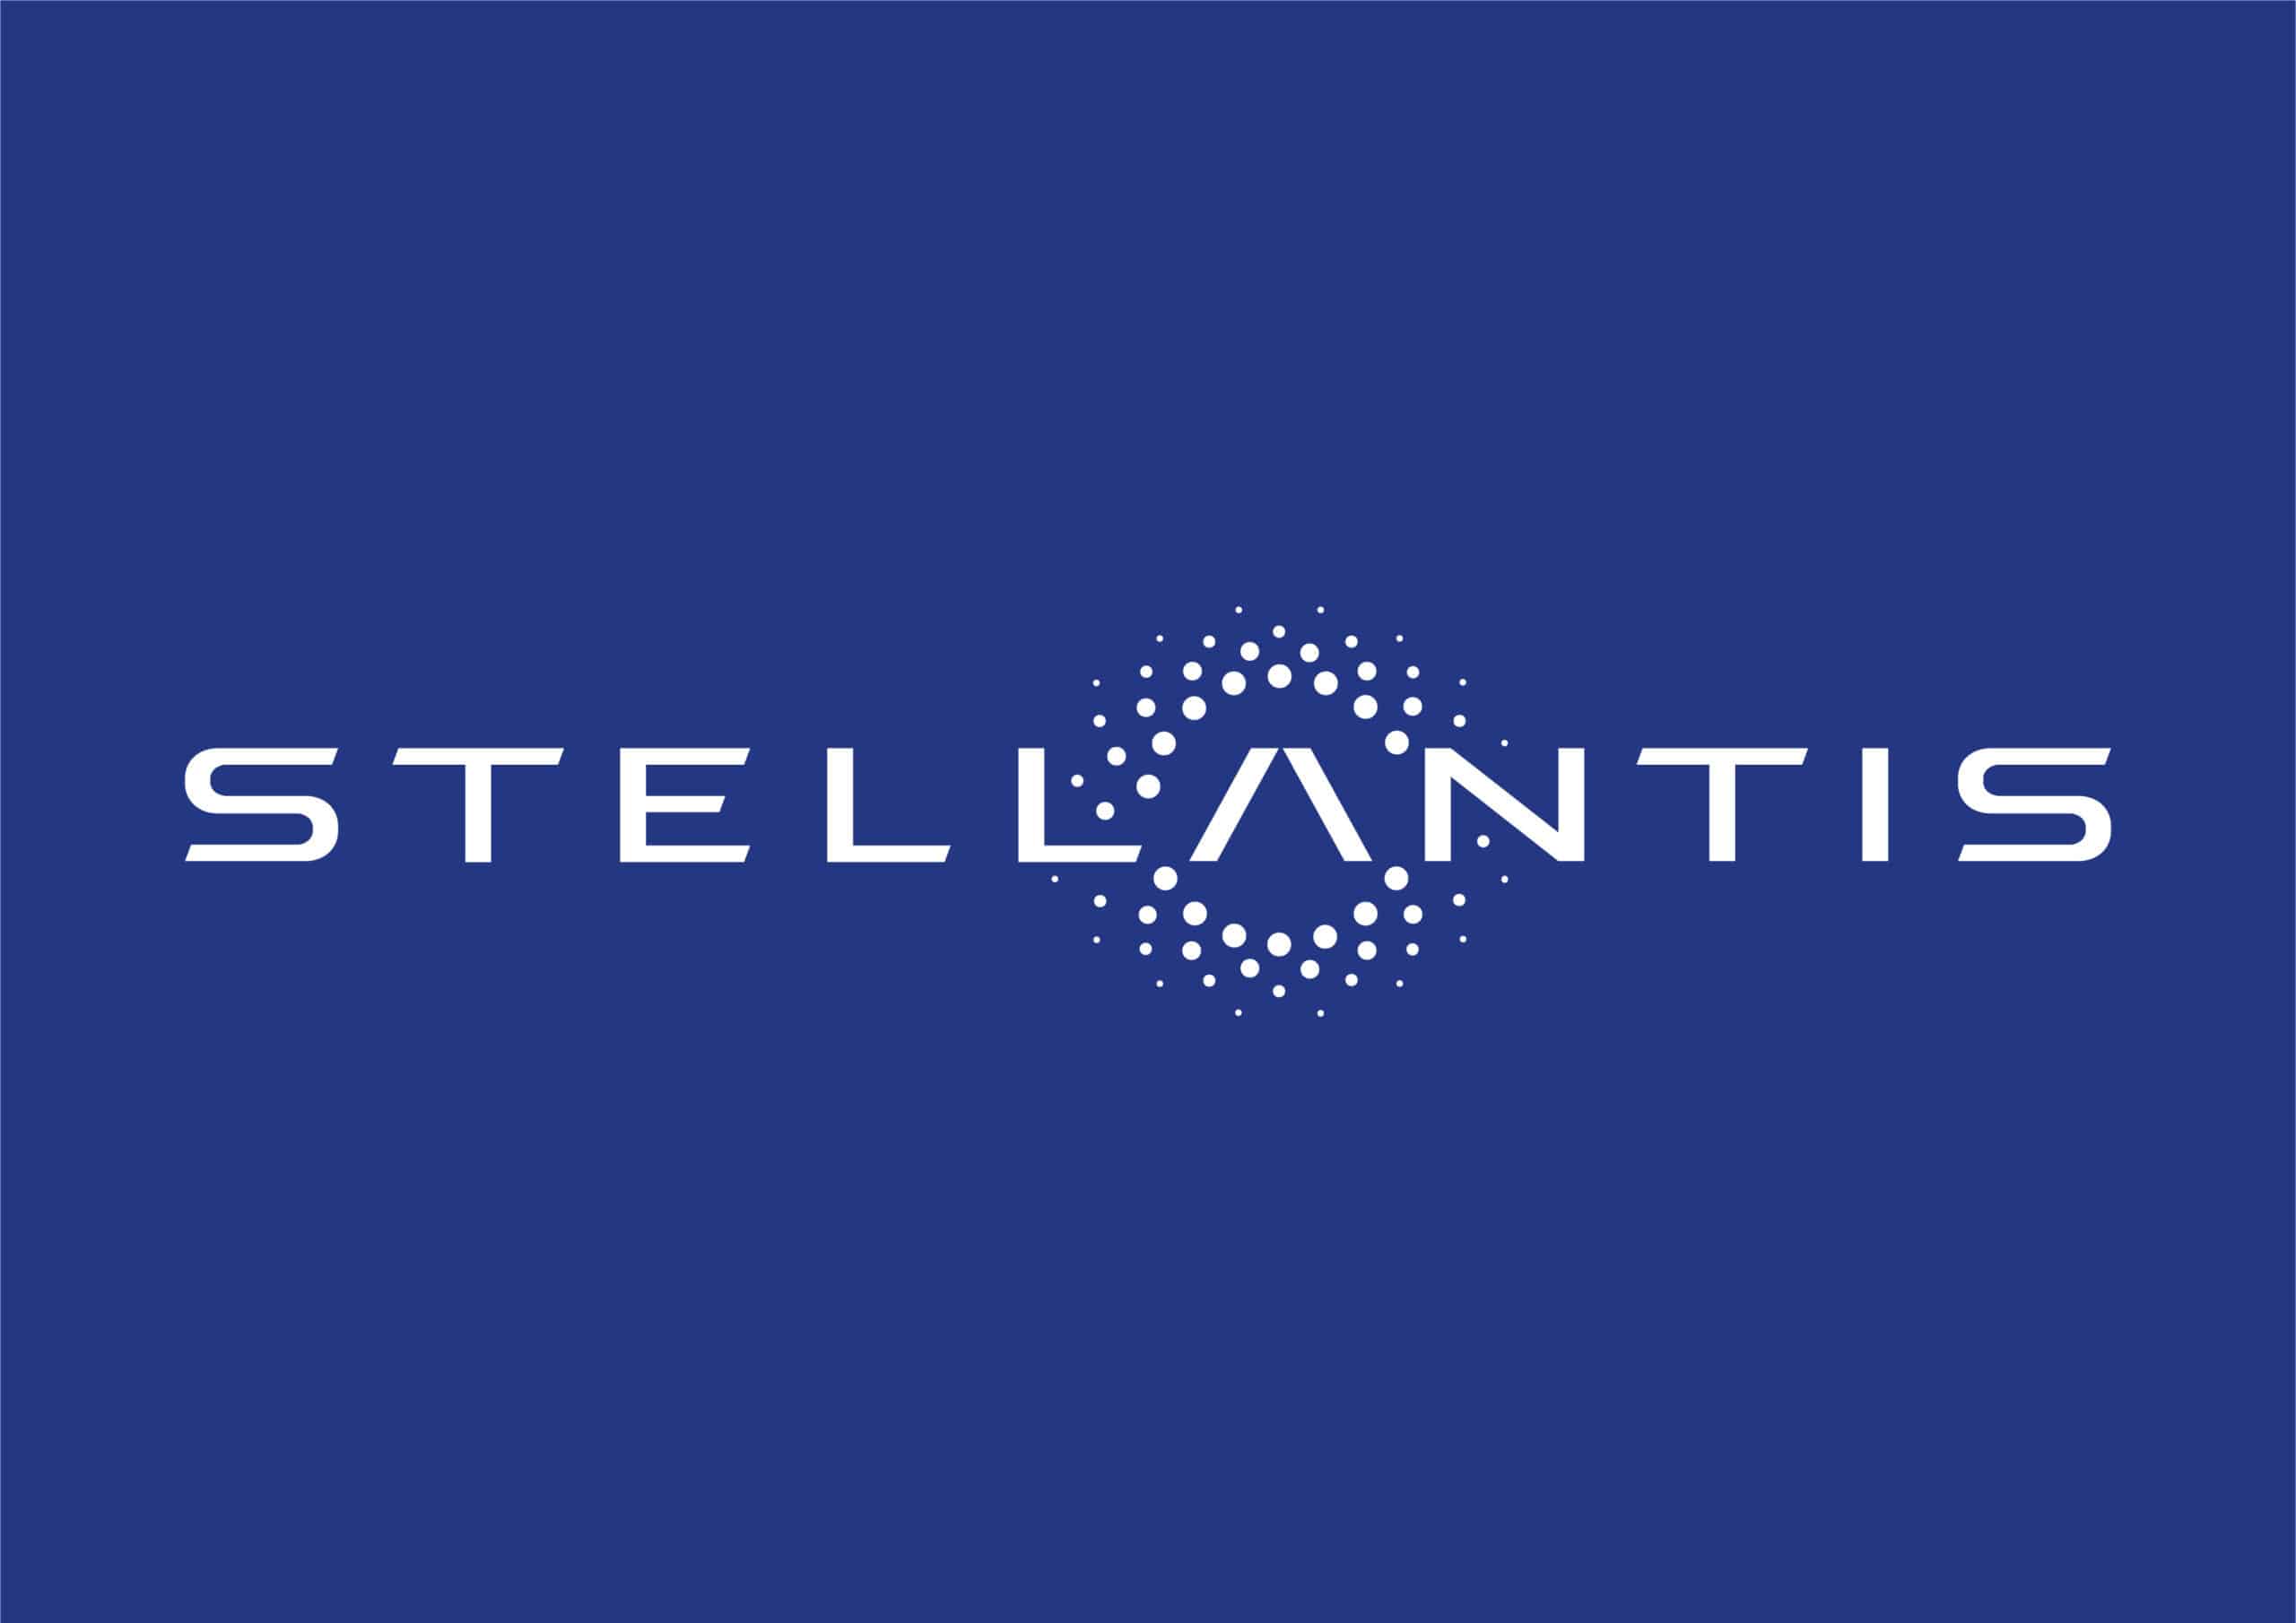 Stellantis mantiene paso firme en ventas en México